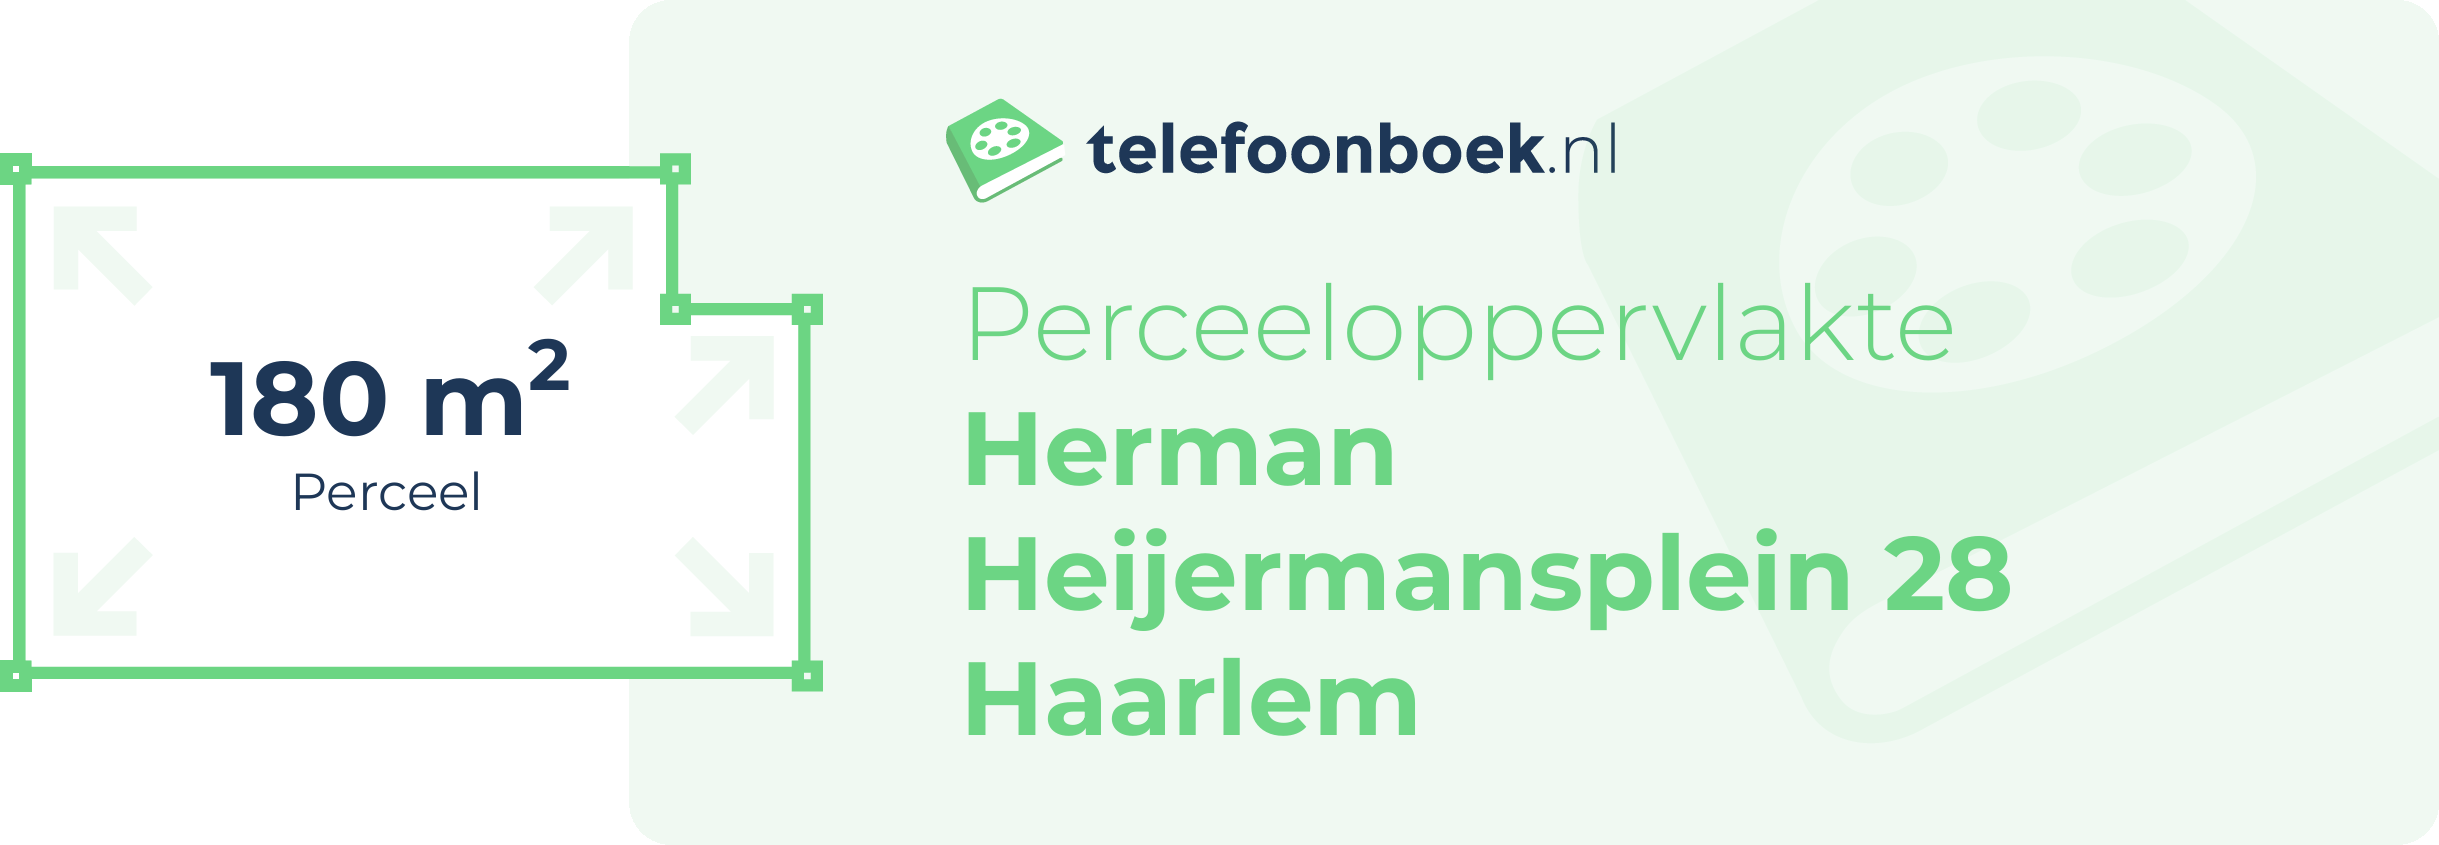 Perceeloppervlakte Herman Heijermansplein 28 Haarlem